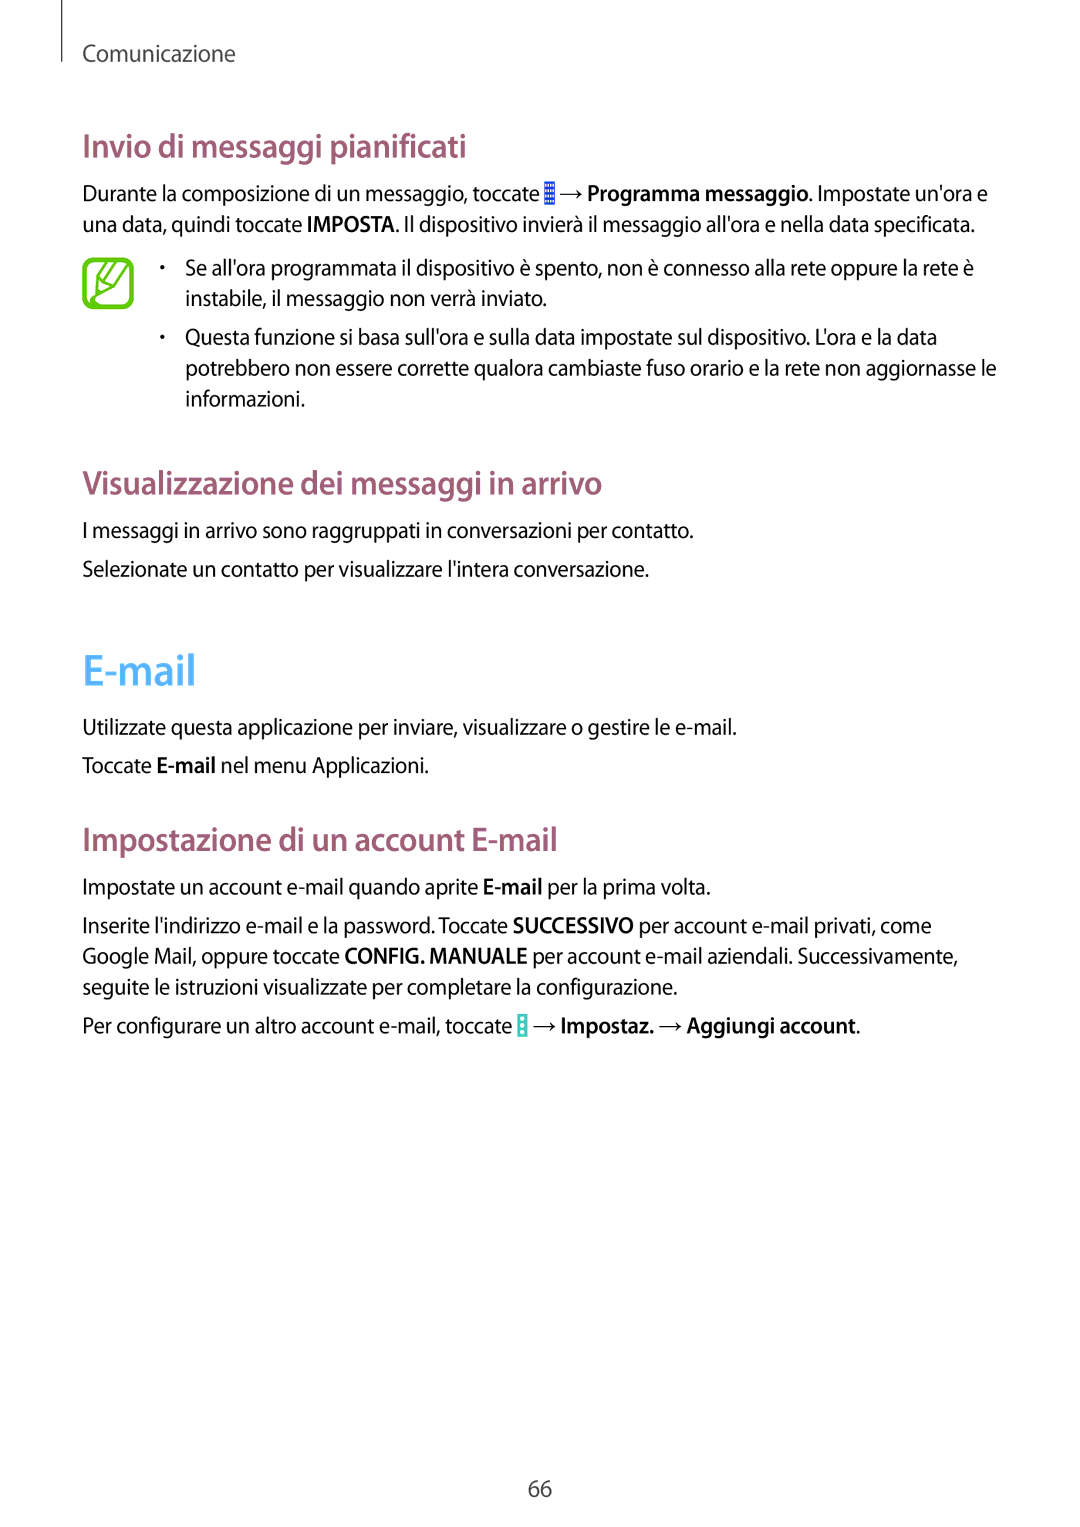 Samsung SM-P9050ZKAITV, SM-P9050ZKAXEO manual Mail, Invio di messaggi pianificati, Visualizzazione dei messaggi in arrivo 